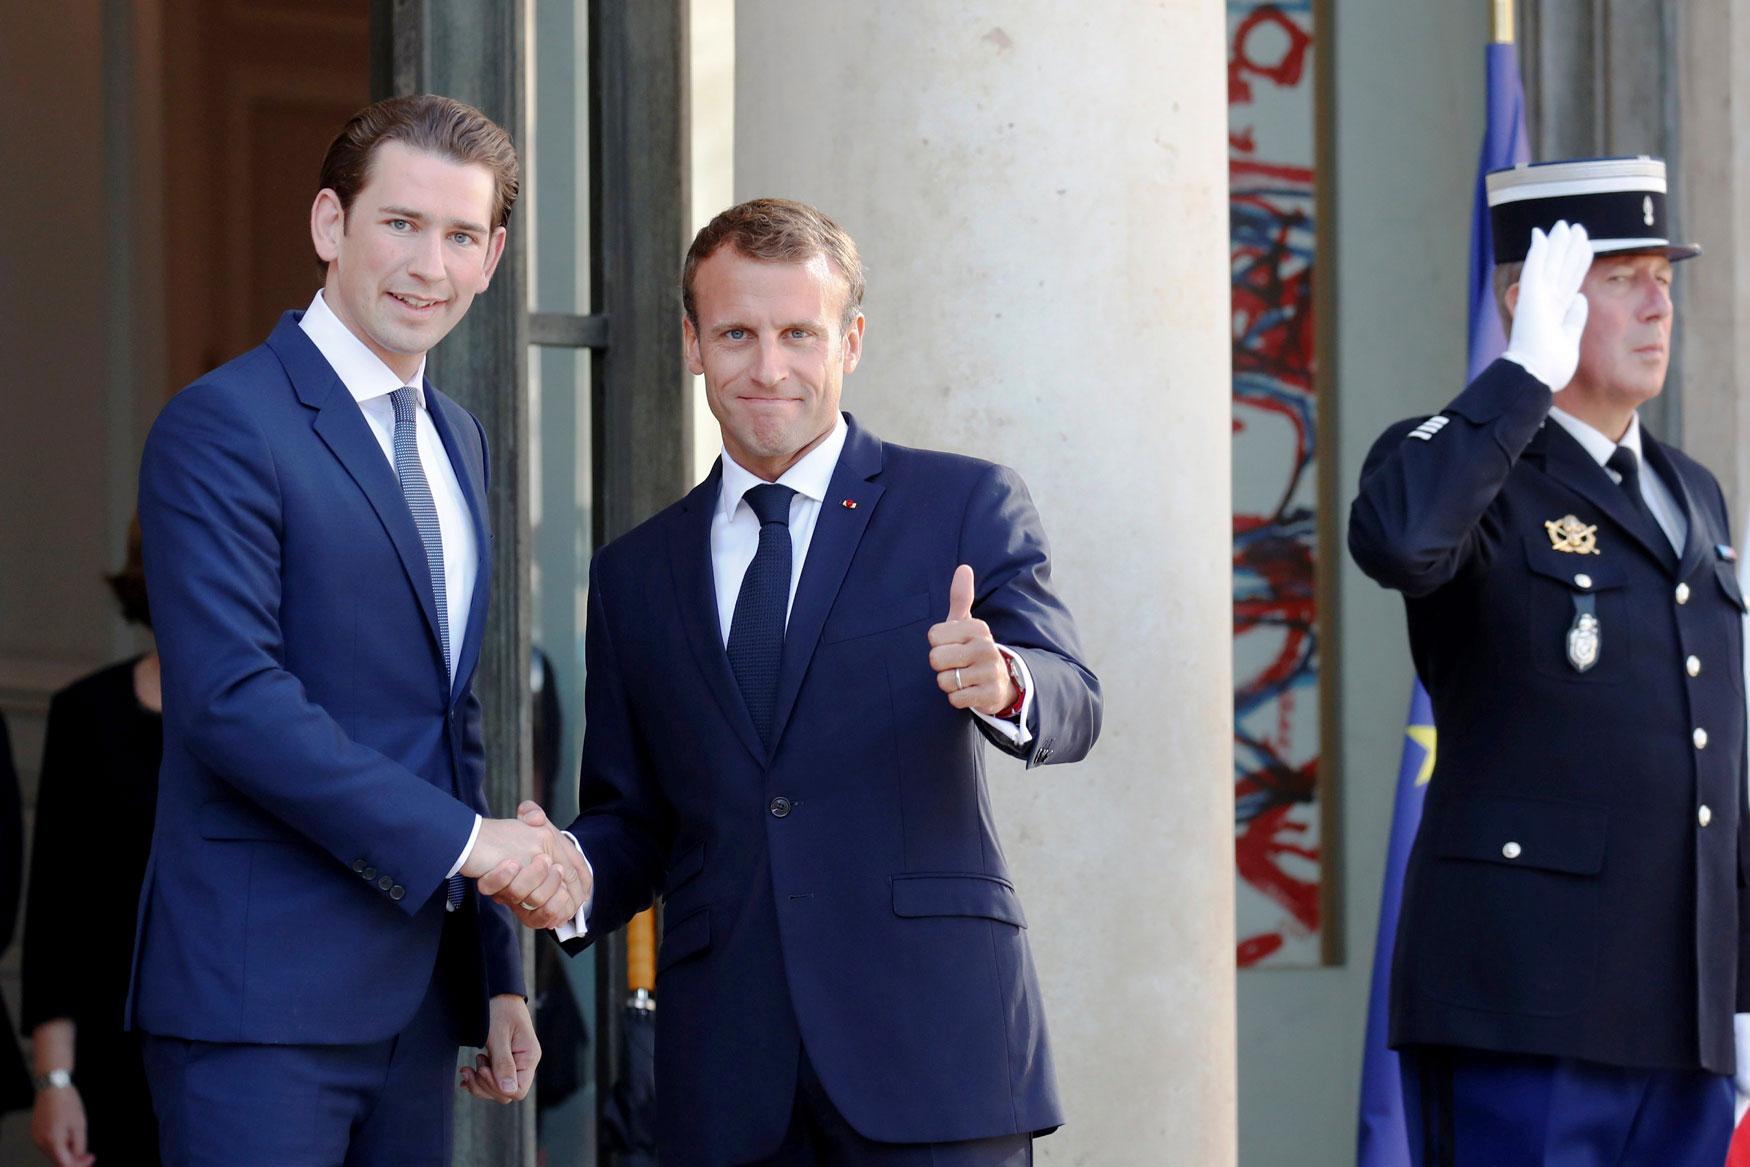 الرئيس الفرنسي امانويل ماكرون والمستشار النمساوي سيباستيان كورتز  يبحثان قضية الهجرة وبريكست